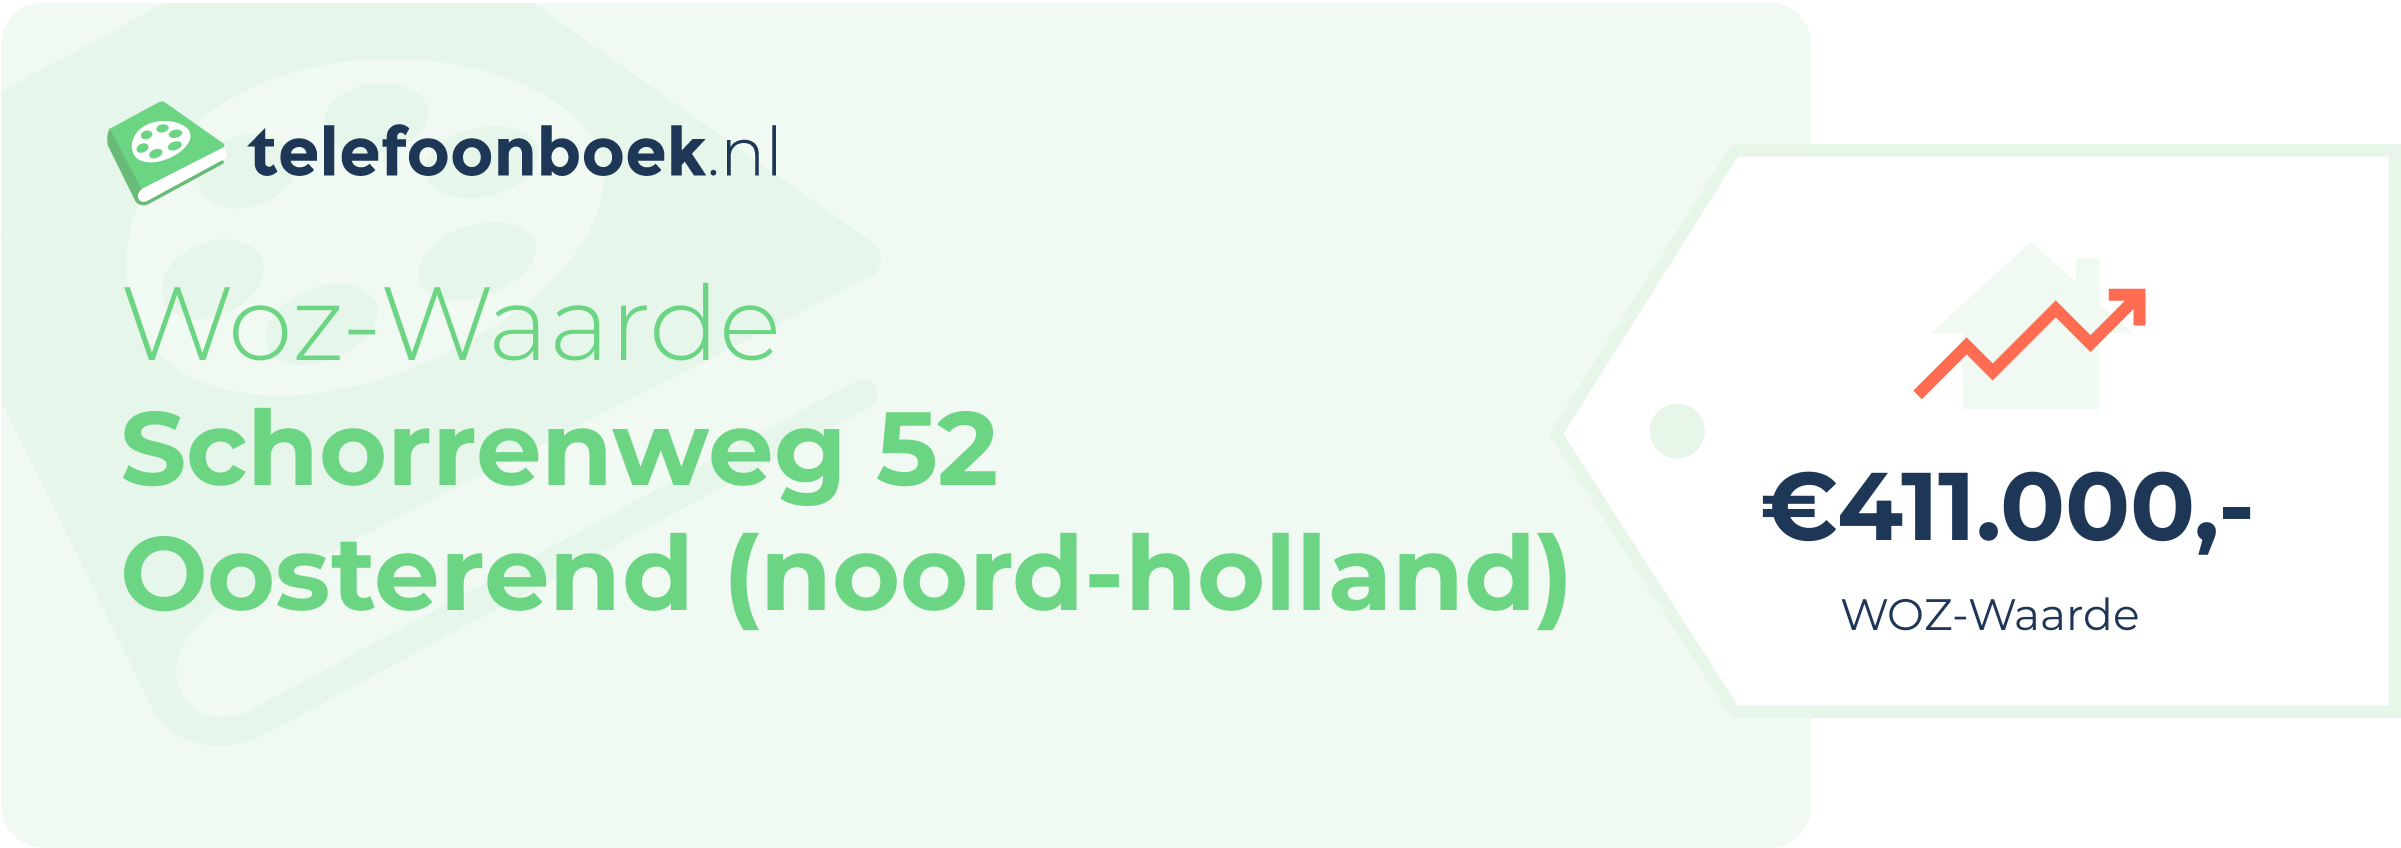 WOZ-waarde Schorrenweg 52 Oosterend (Noord-Holland)